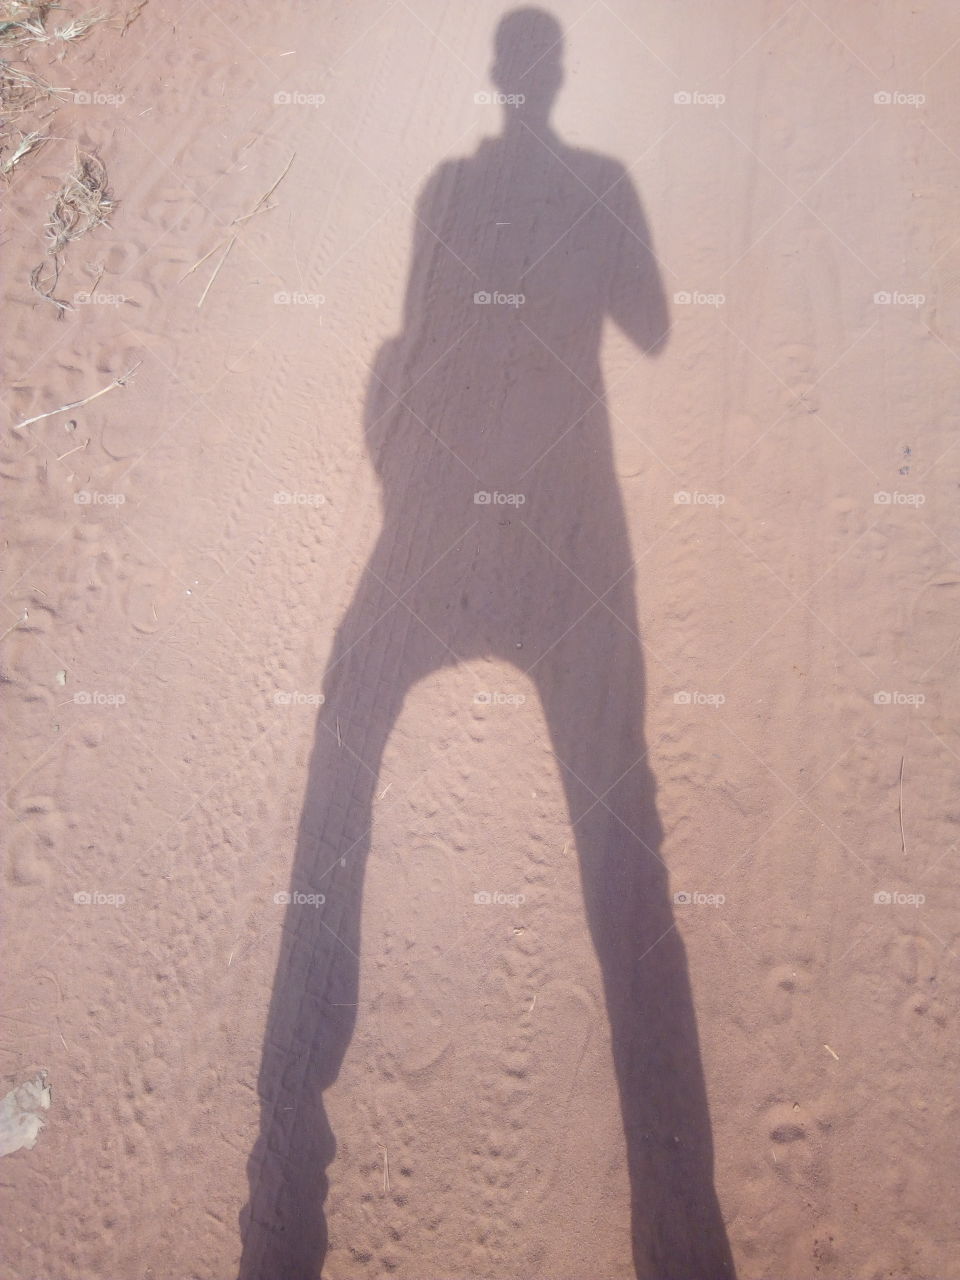 #Shadow